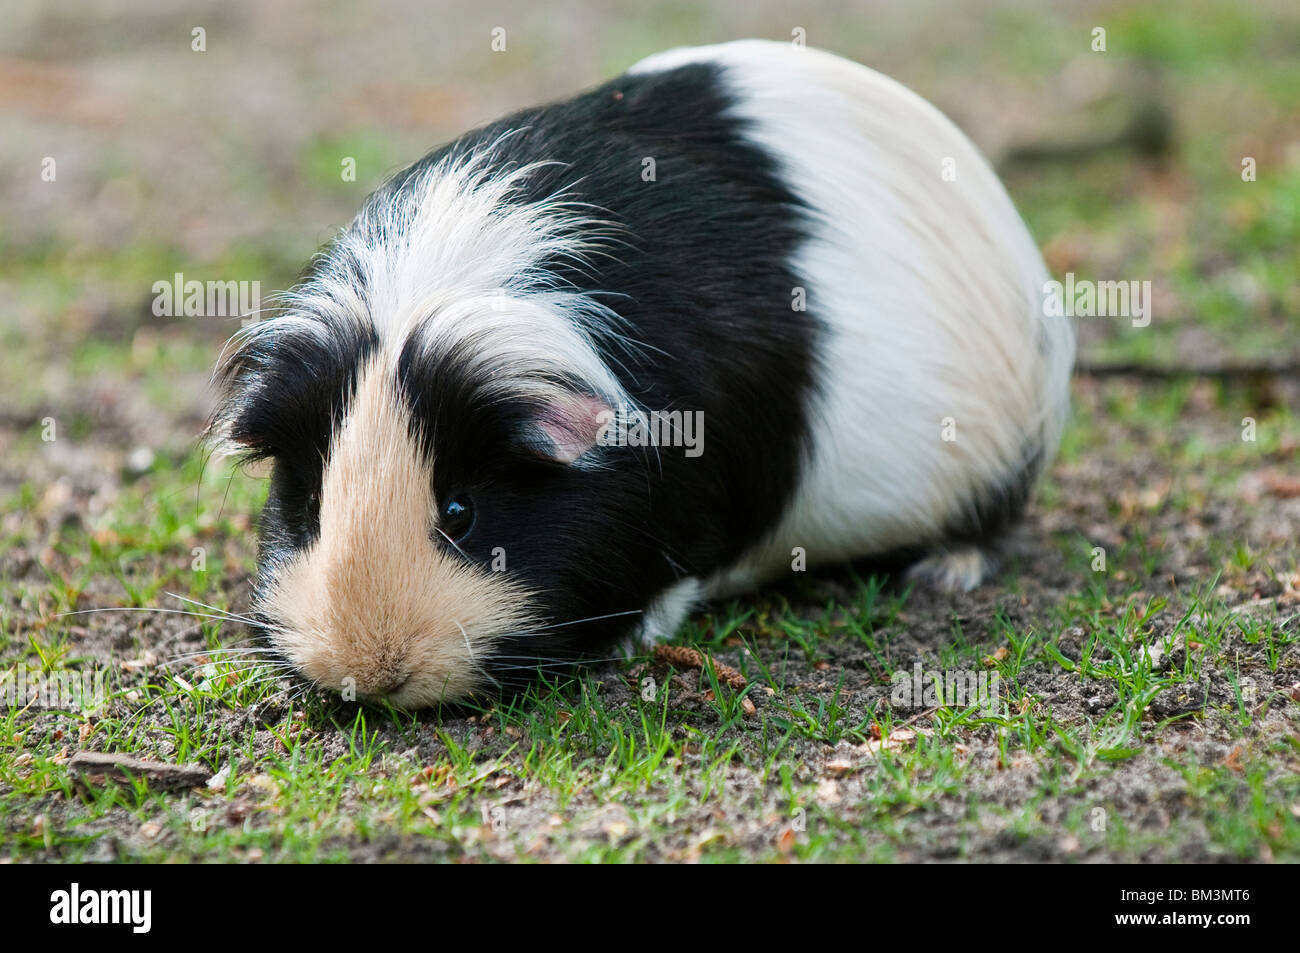 Guinea Pig, Cavia porcellus Stock Photo